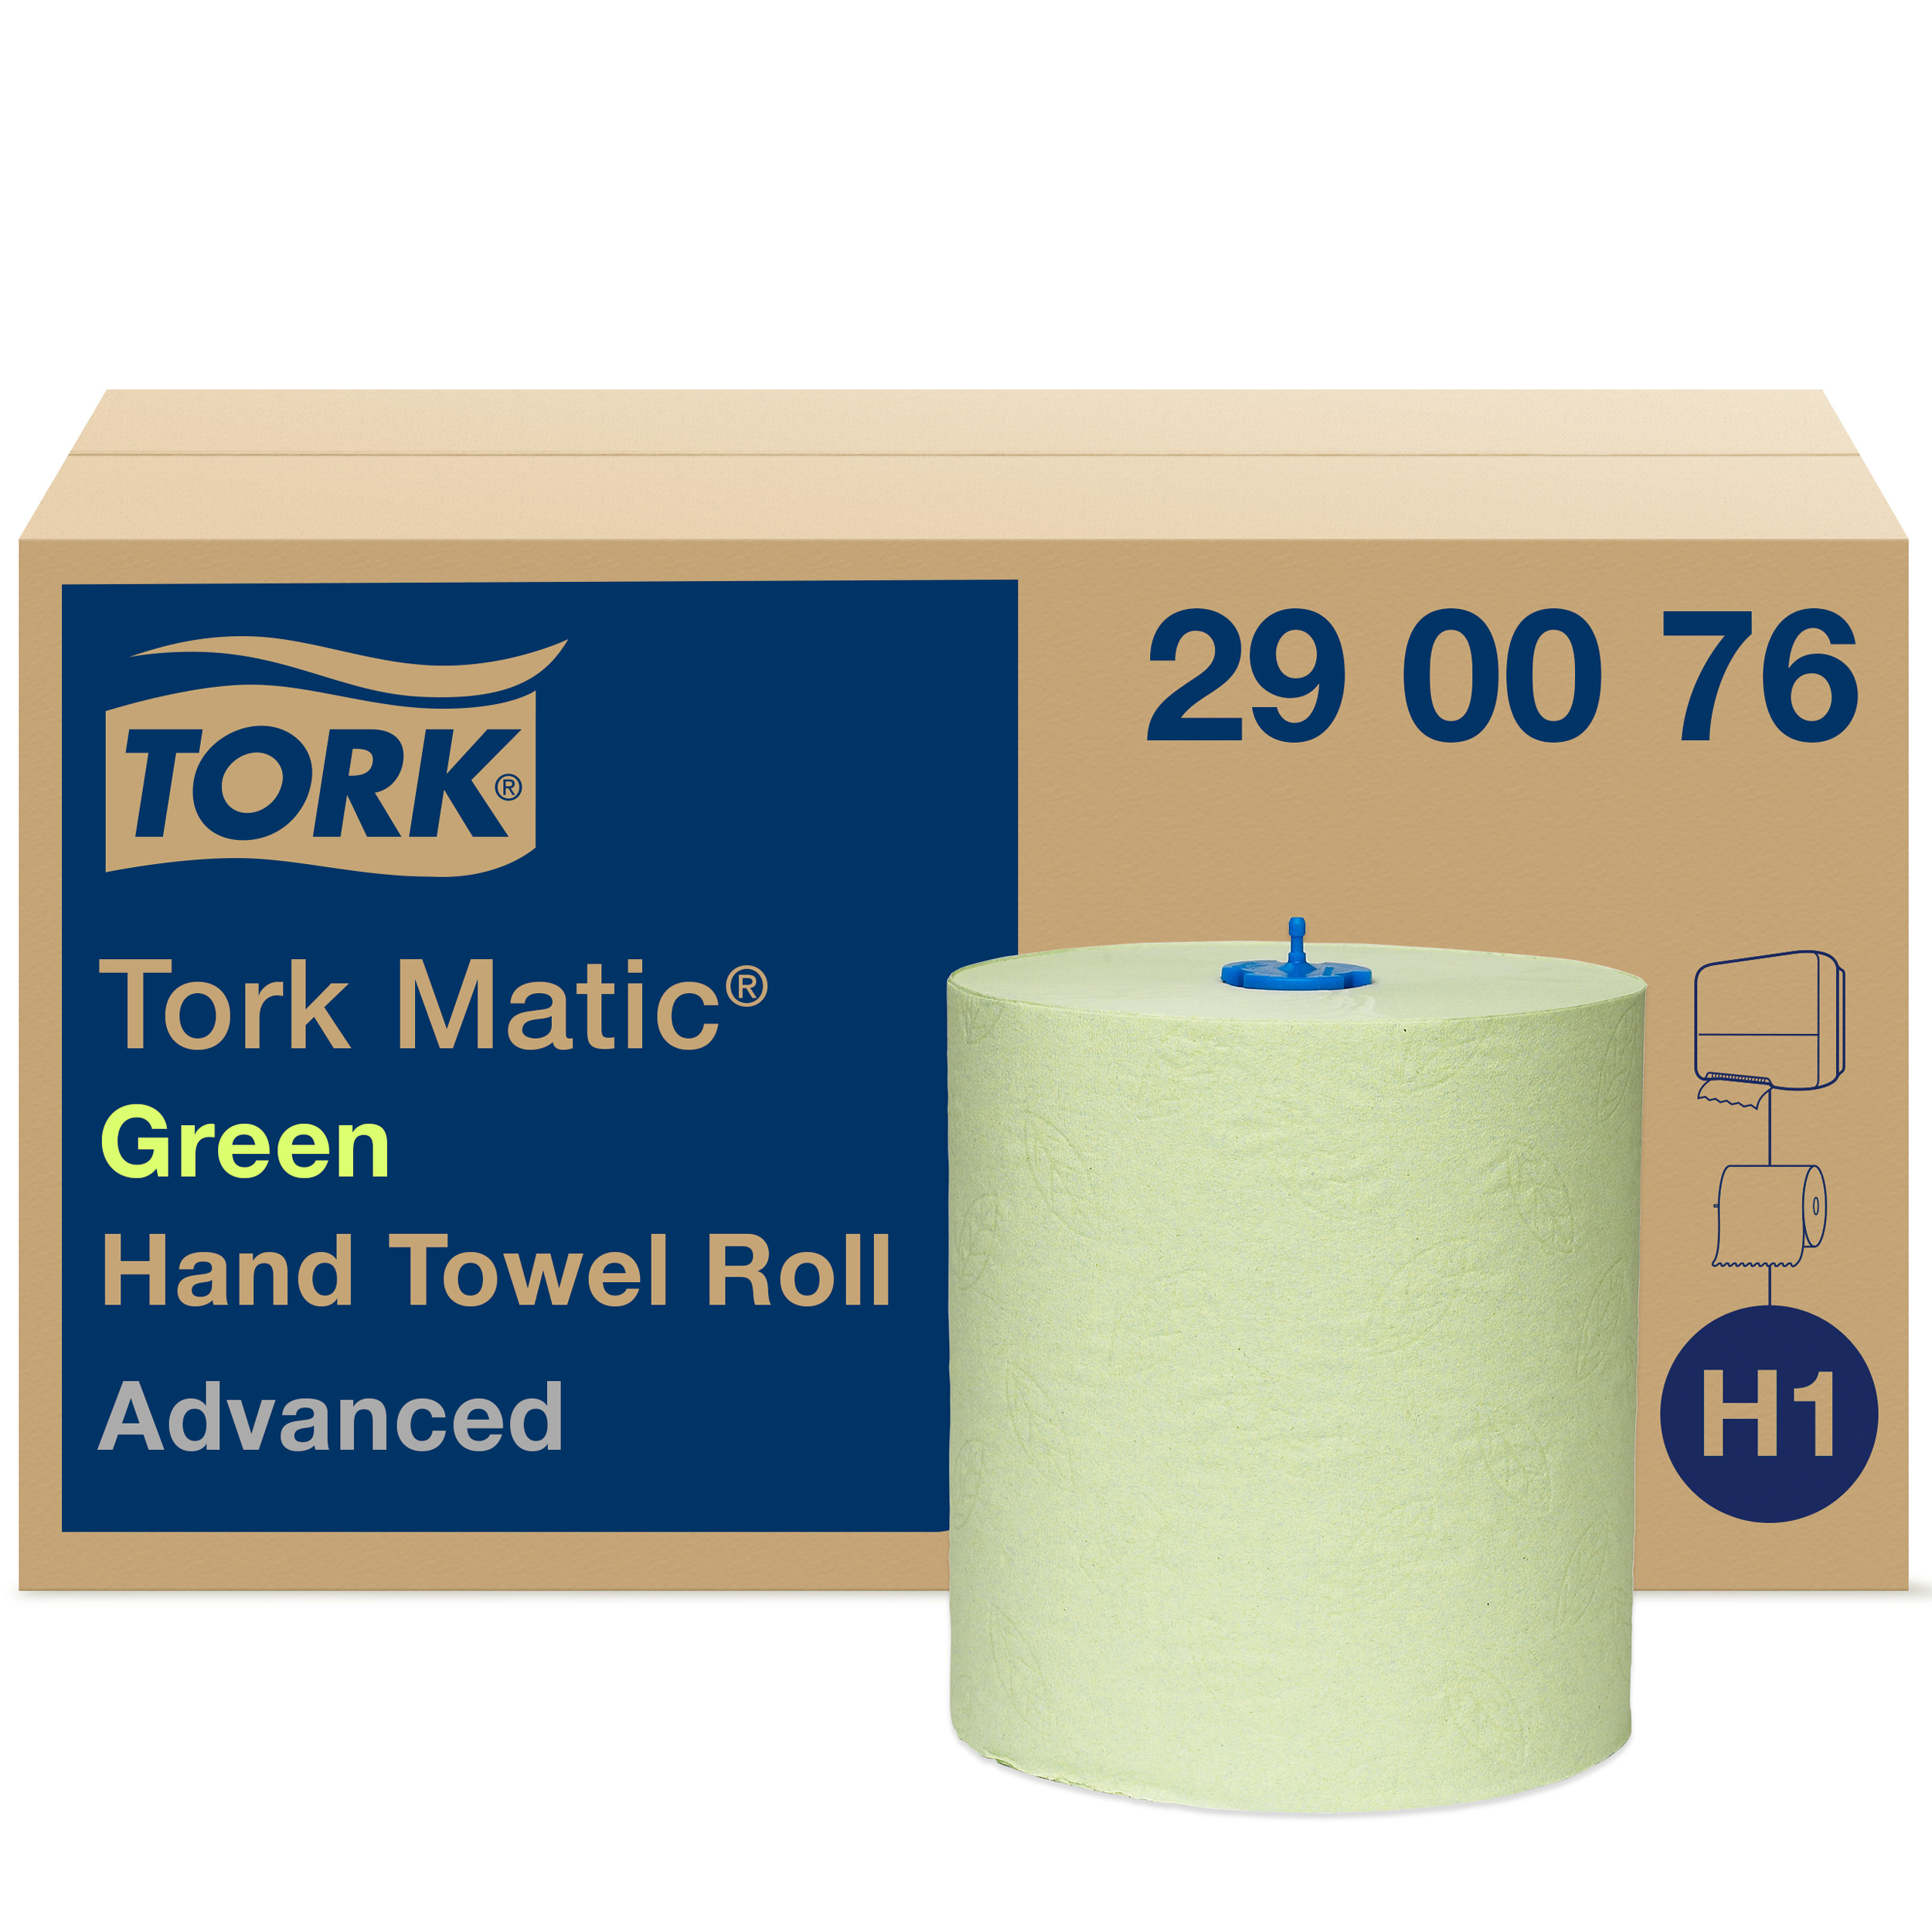 Полотенце бумажное tork advanced. Бумажные полотенца Tork Advanced h1 290076, в рулоне, 150м, 2 слоя, зеленые. Tork 290076. Торк матик hand Towel Roll диспенсер. Полотенца бумажные в рулонах Tork matic "Advanced"(h1), 2-слойные, 150м/.